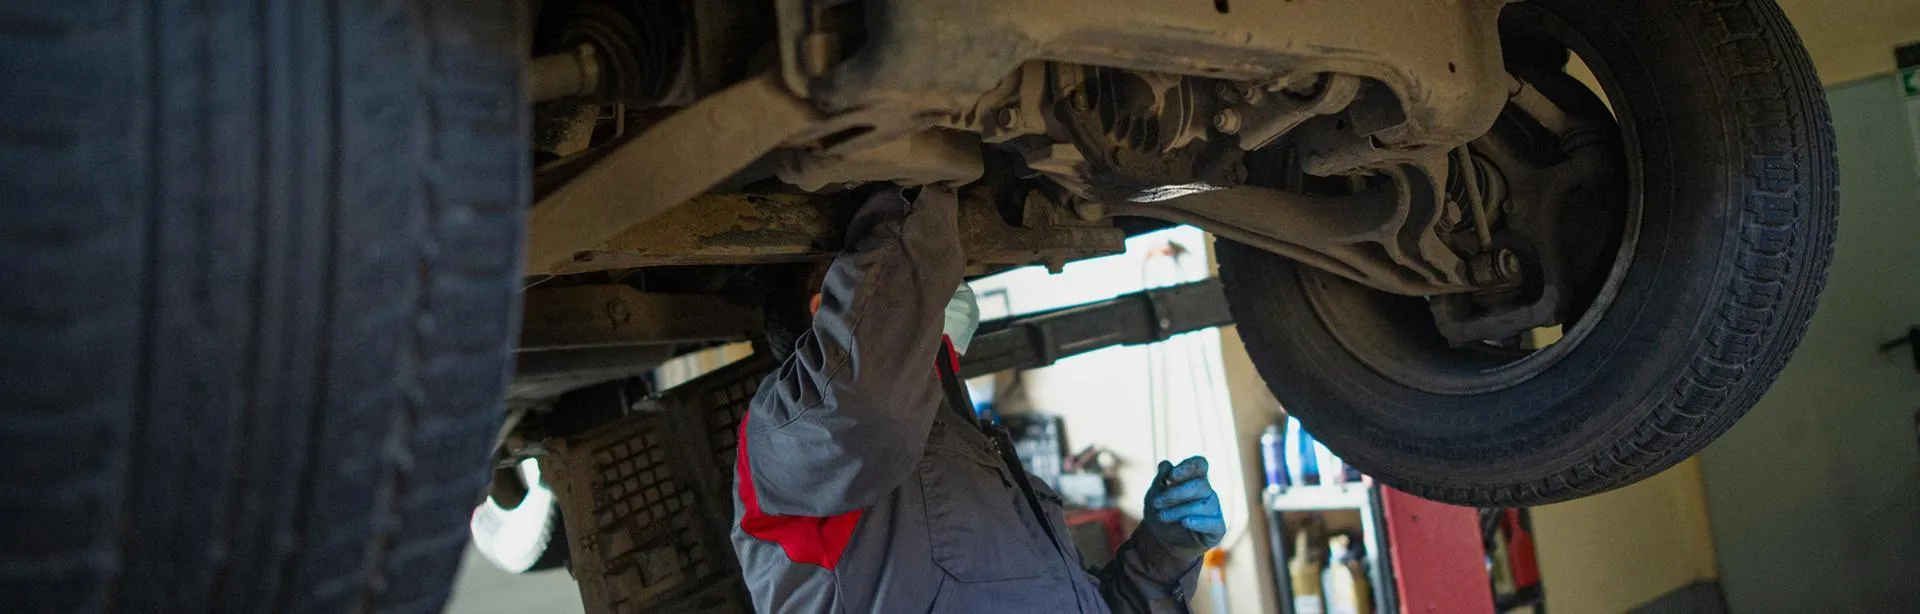 Slajd #3 - mechanik przeglądający podwozie samochodu